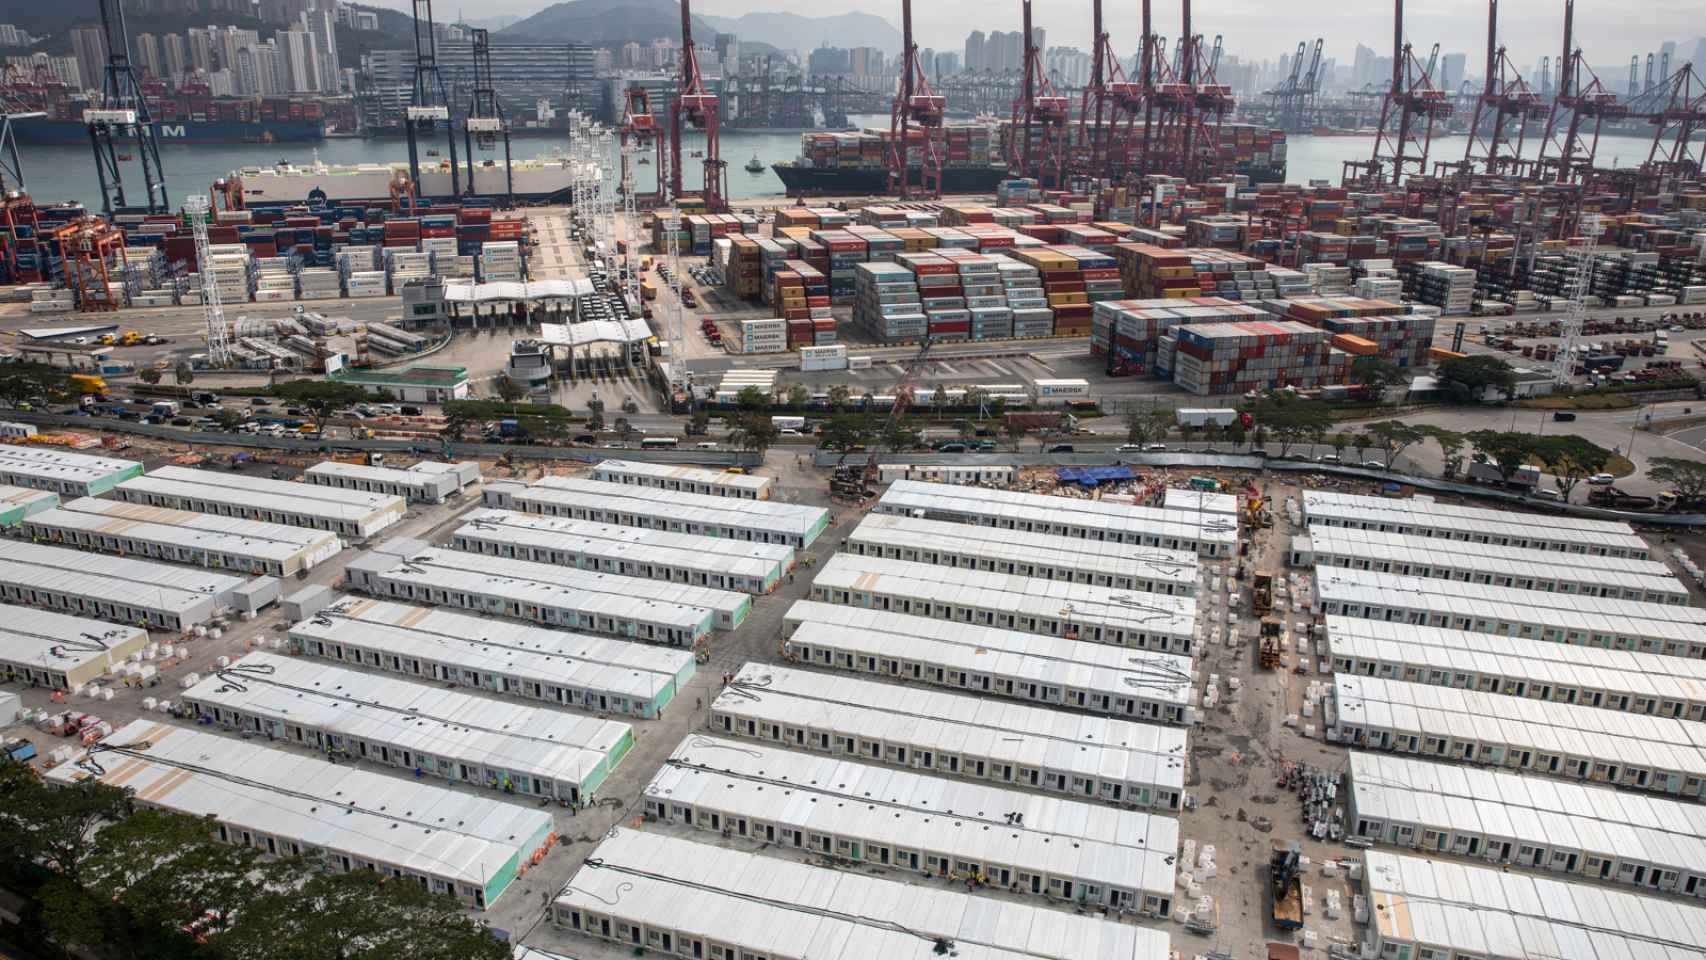 Vista del hospital de emergencia construido en la zona portuaria de Hong Kong.